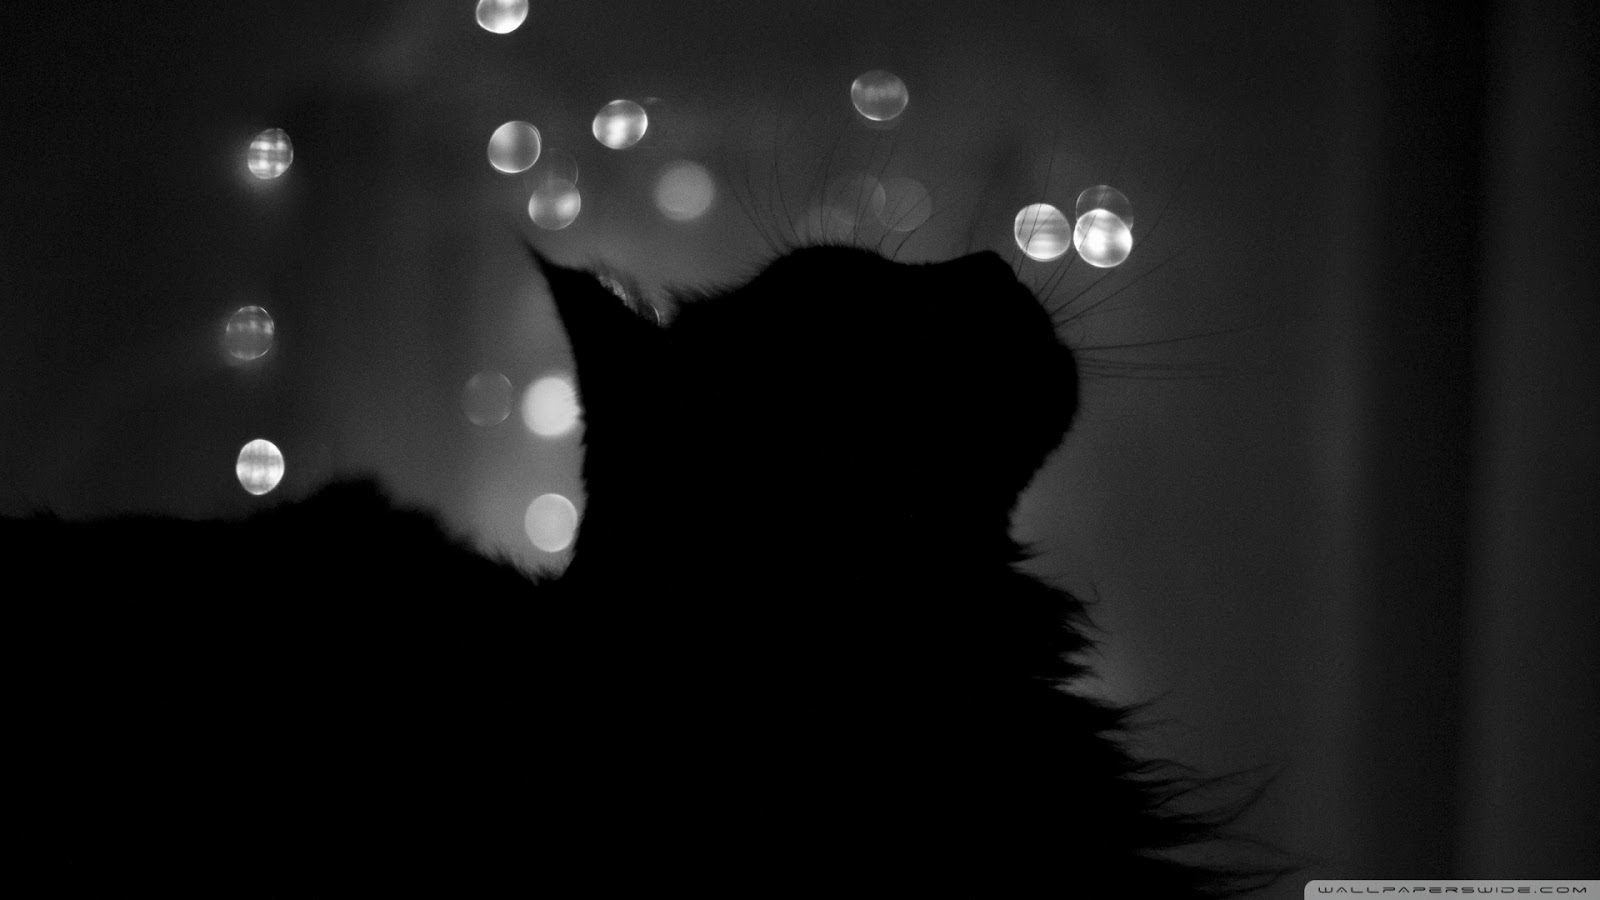 schwarze katze tapete hd,schwarz,schwarz und weiß,licht,monochrome fotografie,dunkelheit